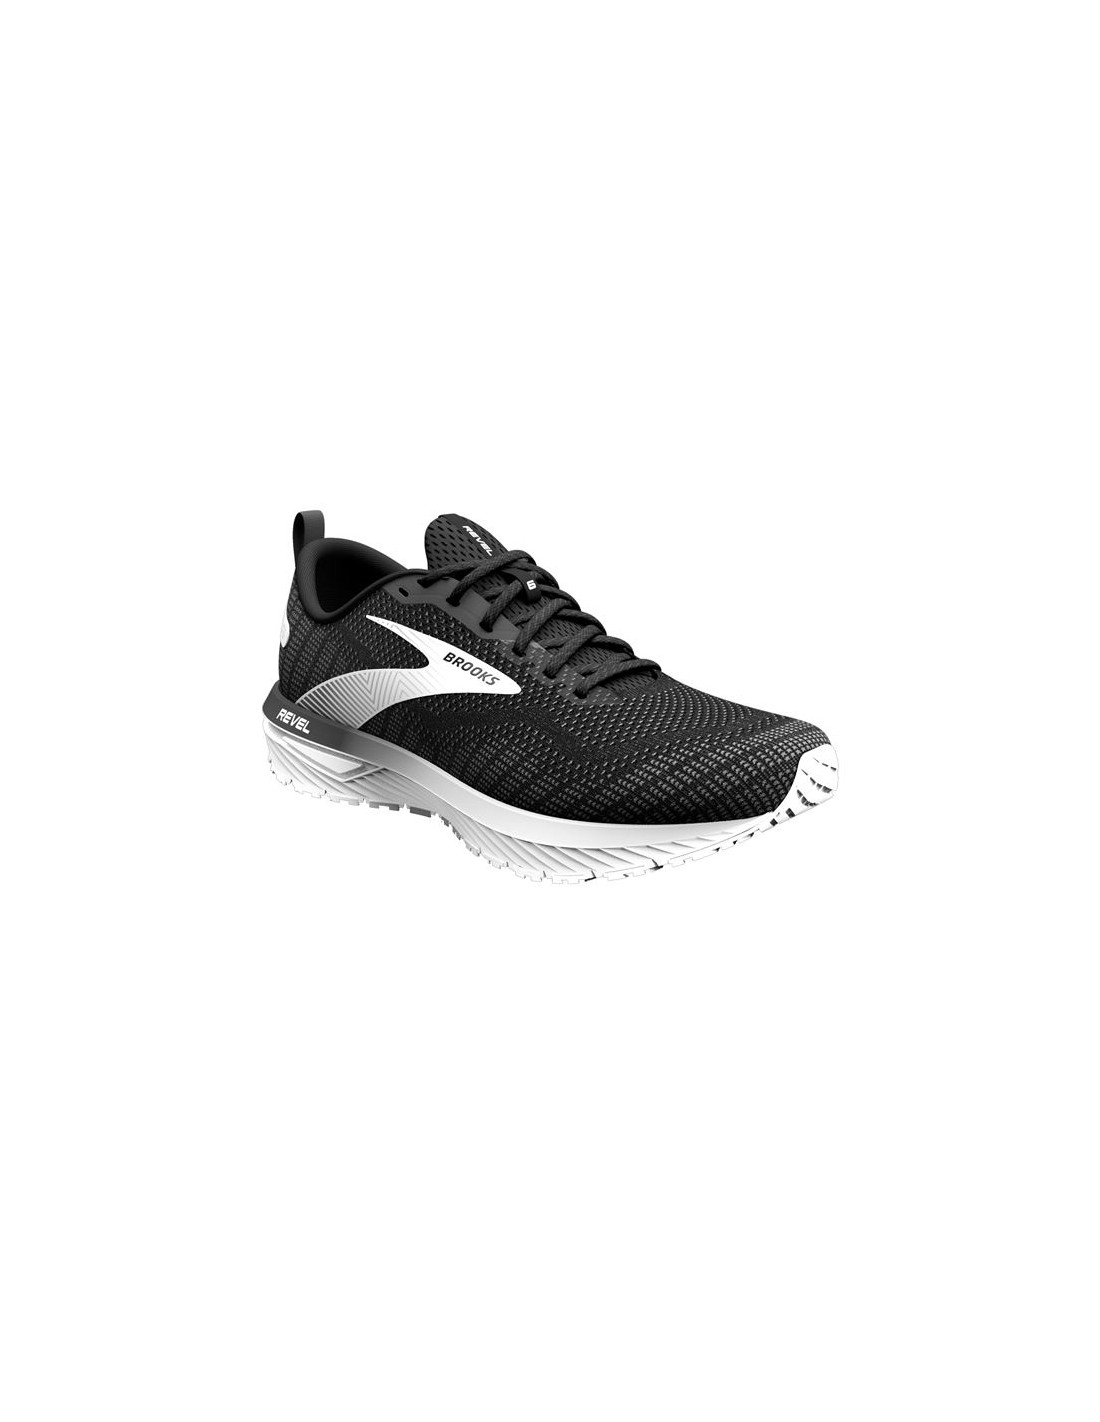 Revel 6 Men's Shoes | Men's Running Shoes | Brooks Running